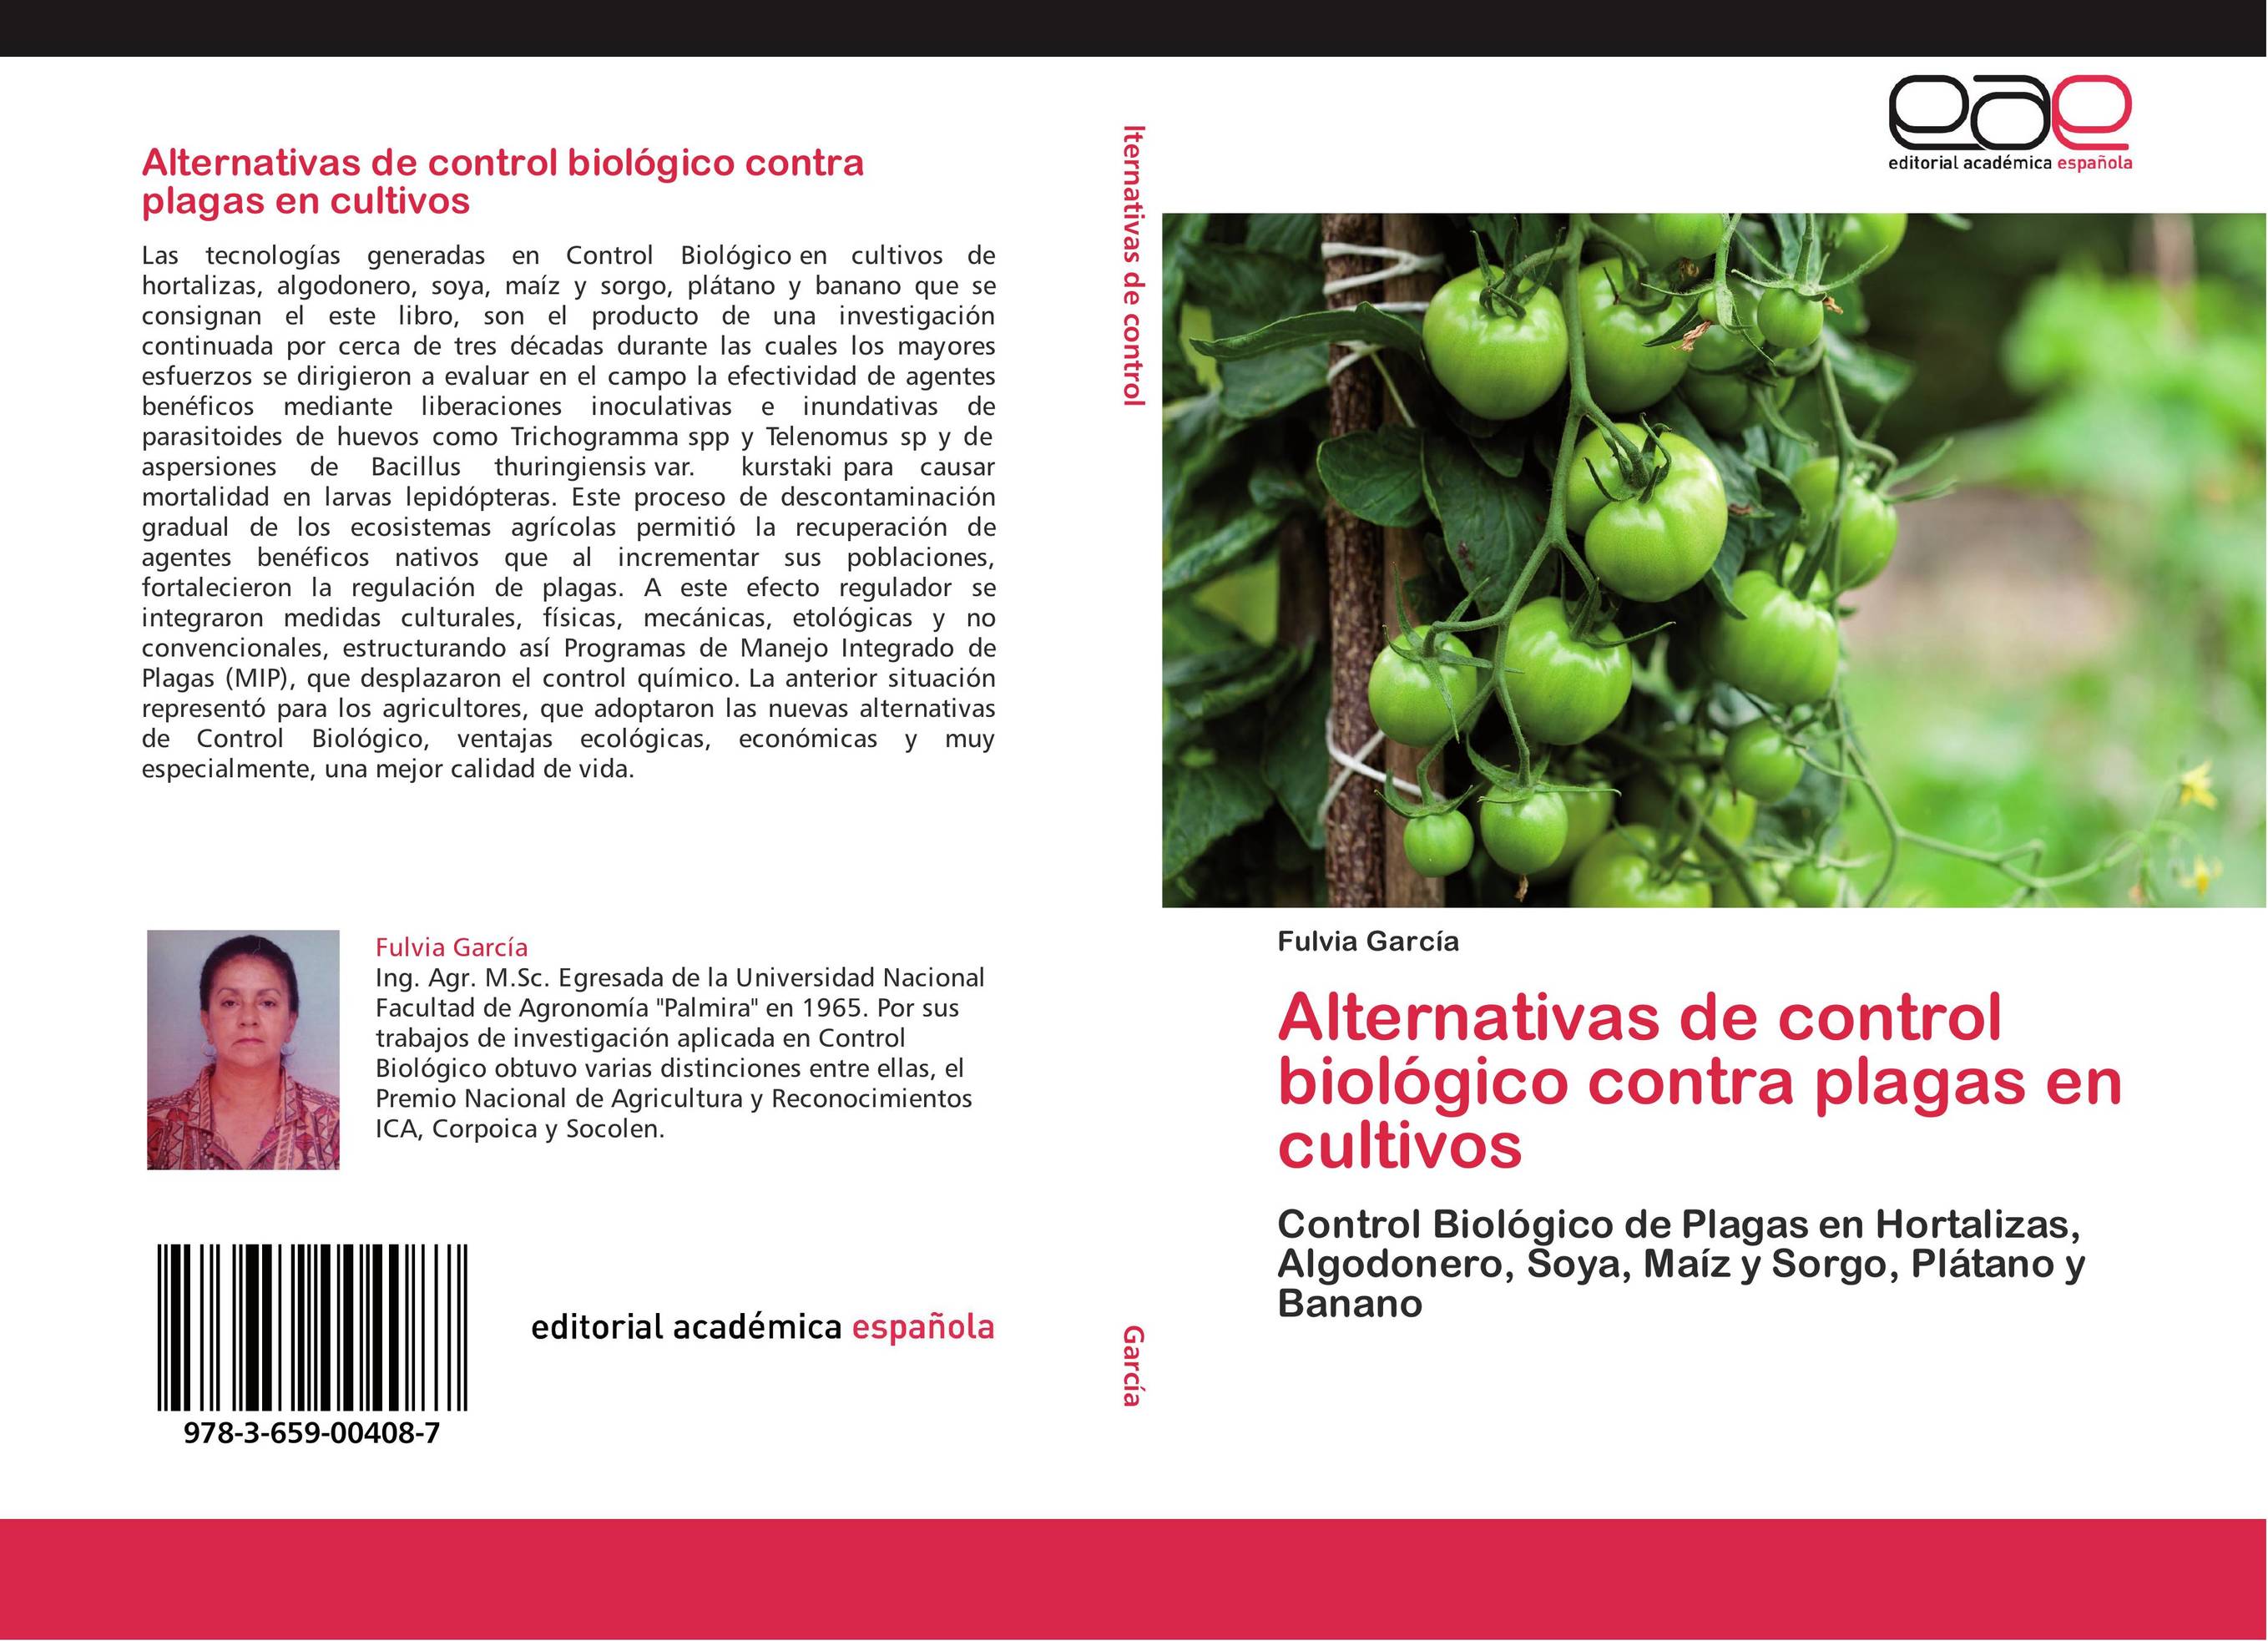 Alternativas de control biológico contra plagas en cultivos